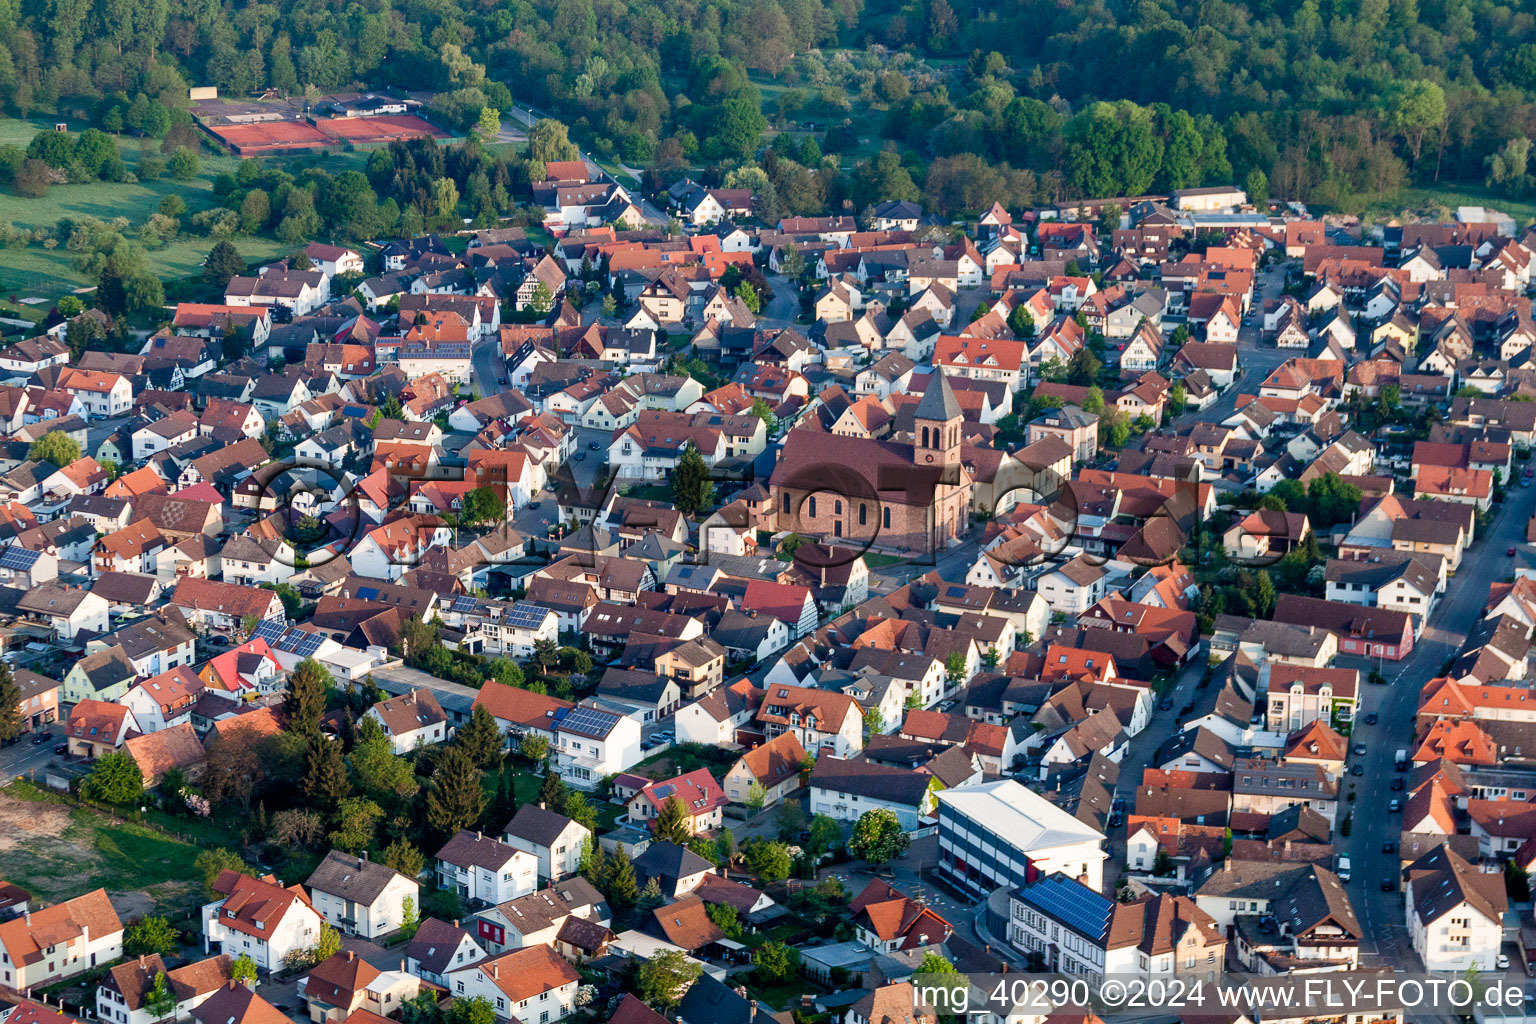 Vue aérienne de Bâtiment d'église à Ötigheim dans le département Bade-Wurtemberg, Allemagne